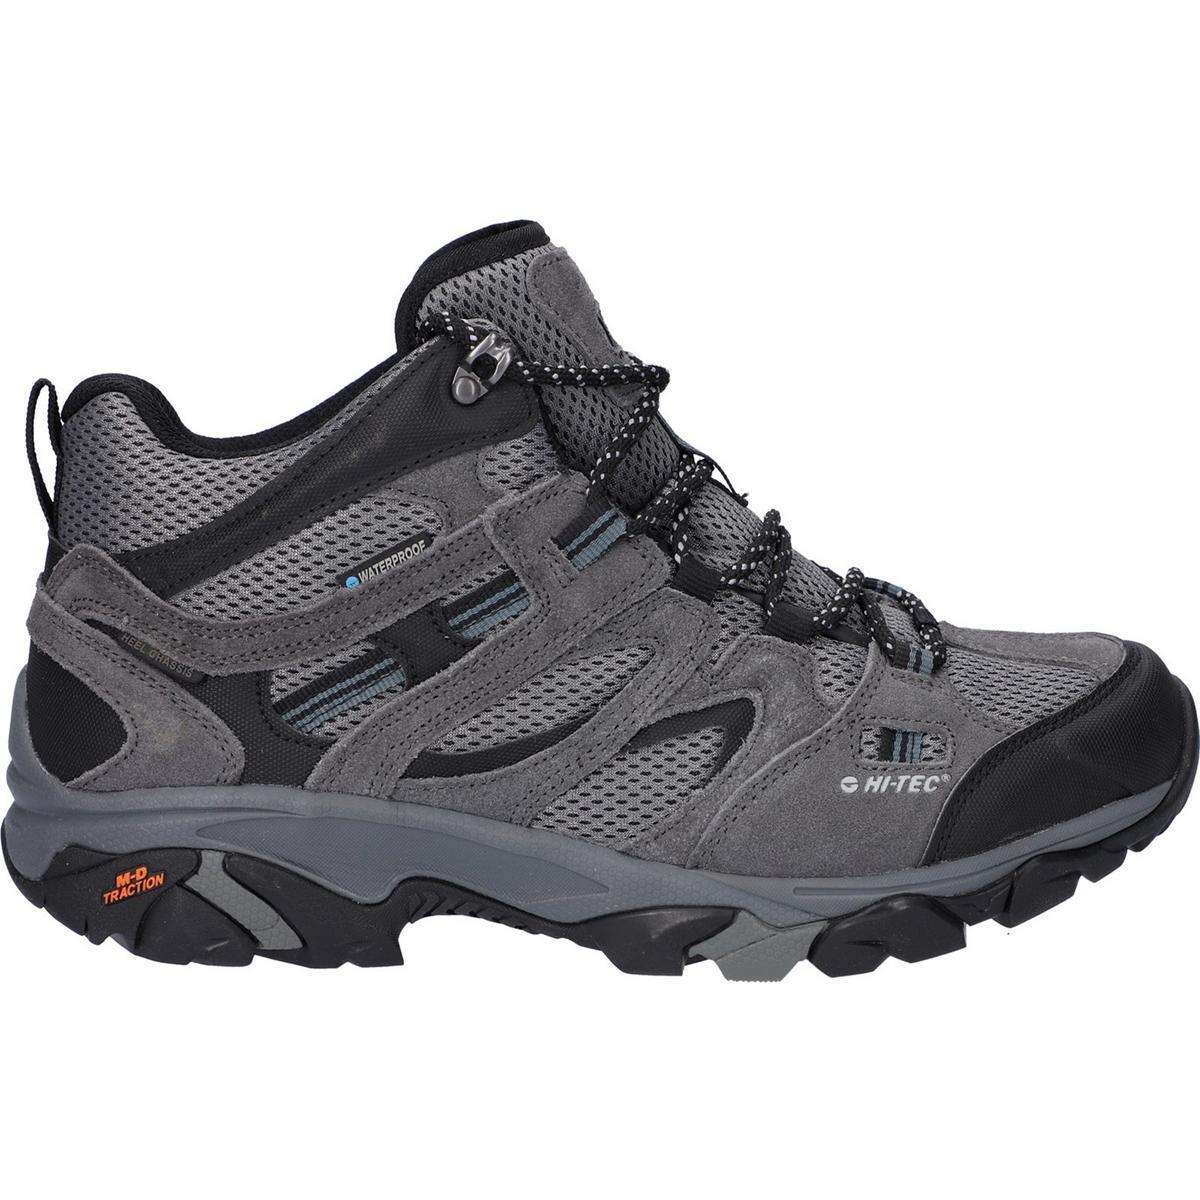 Hi-Tec Apex Lite Mid men's waterproof breathable hiking/walking boot